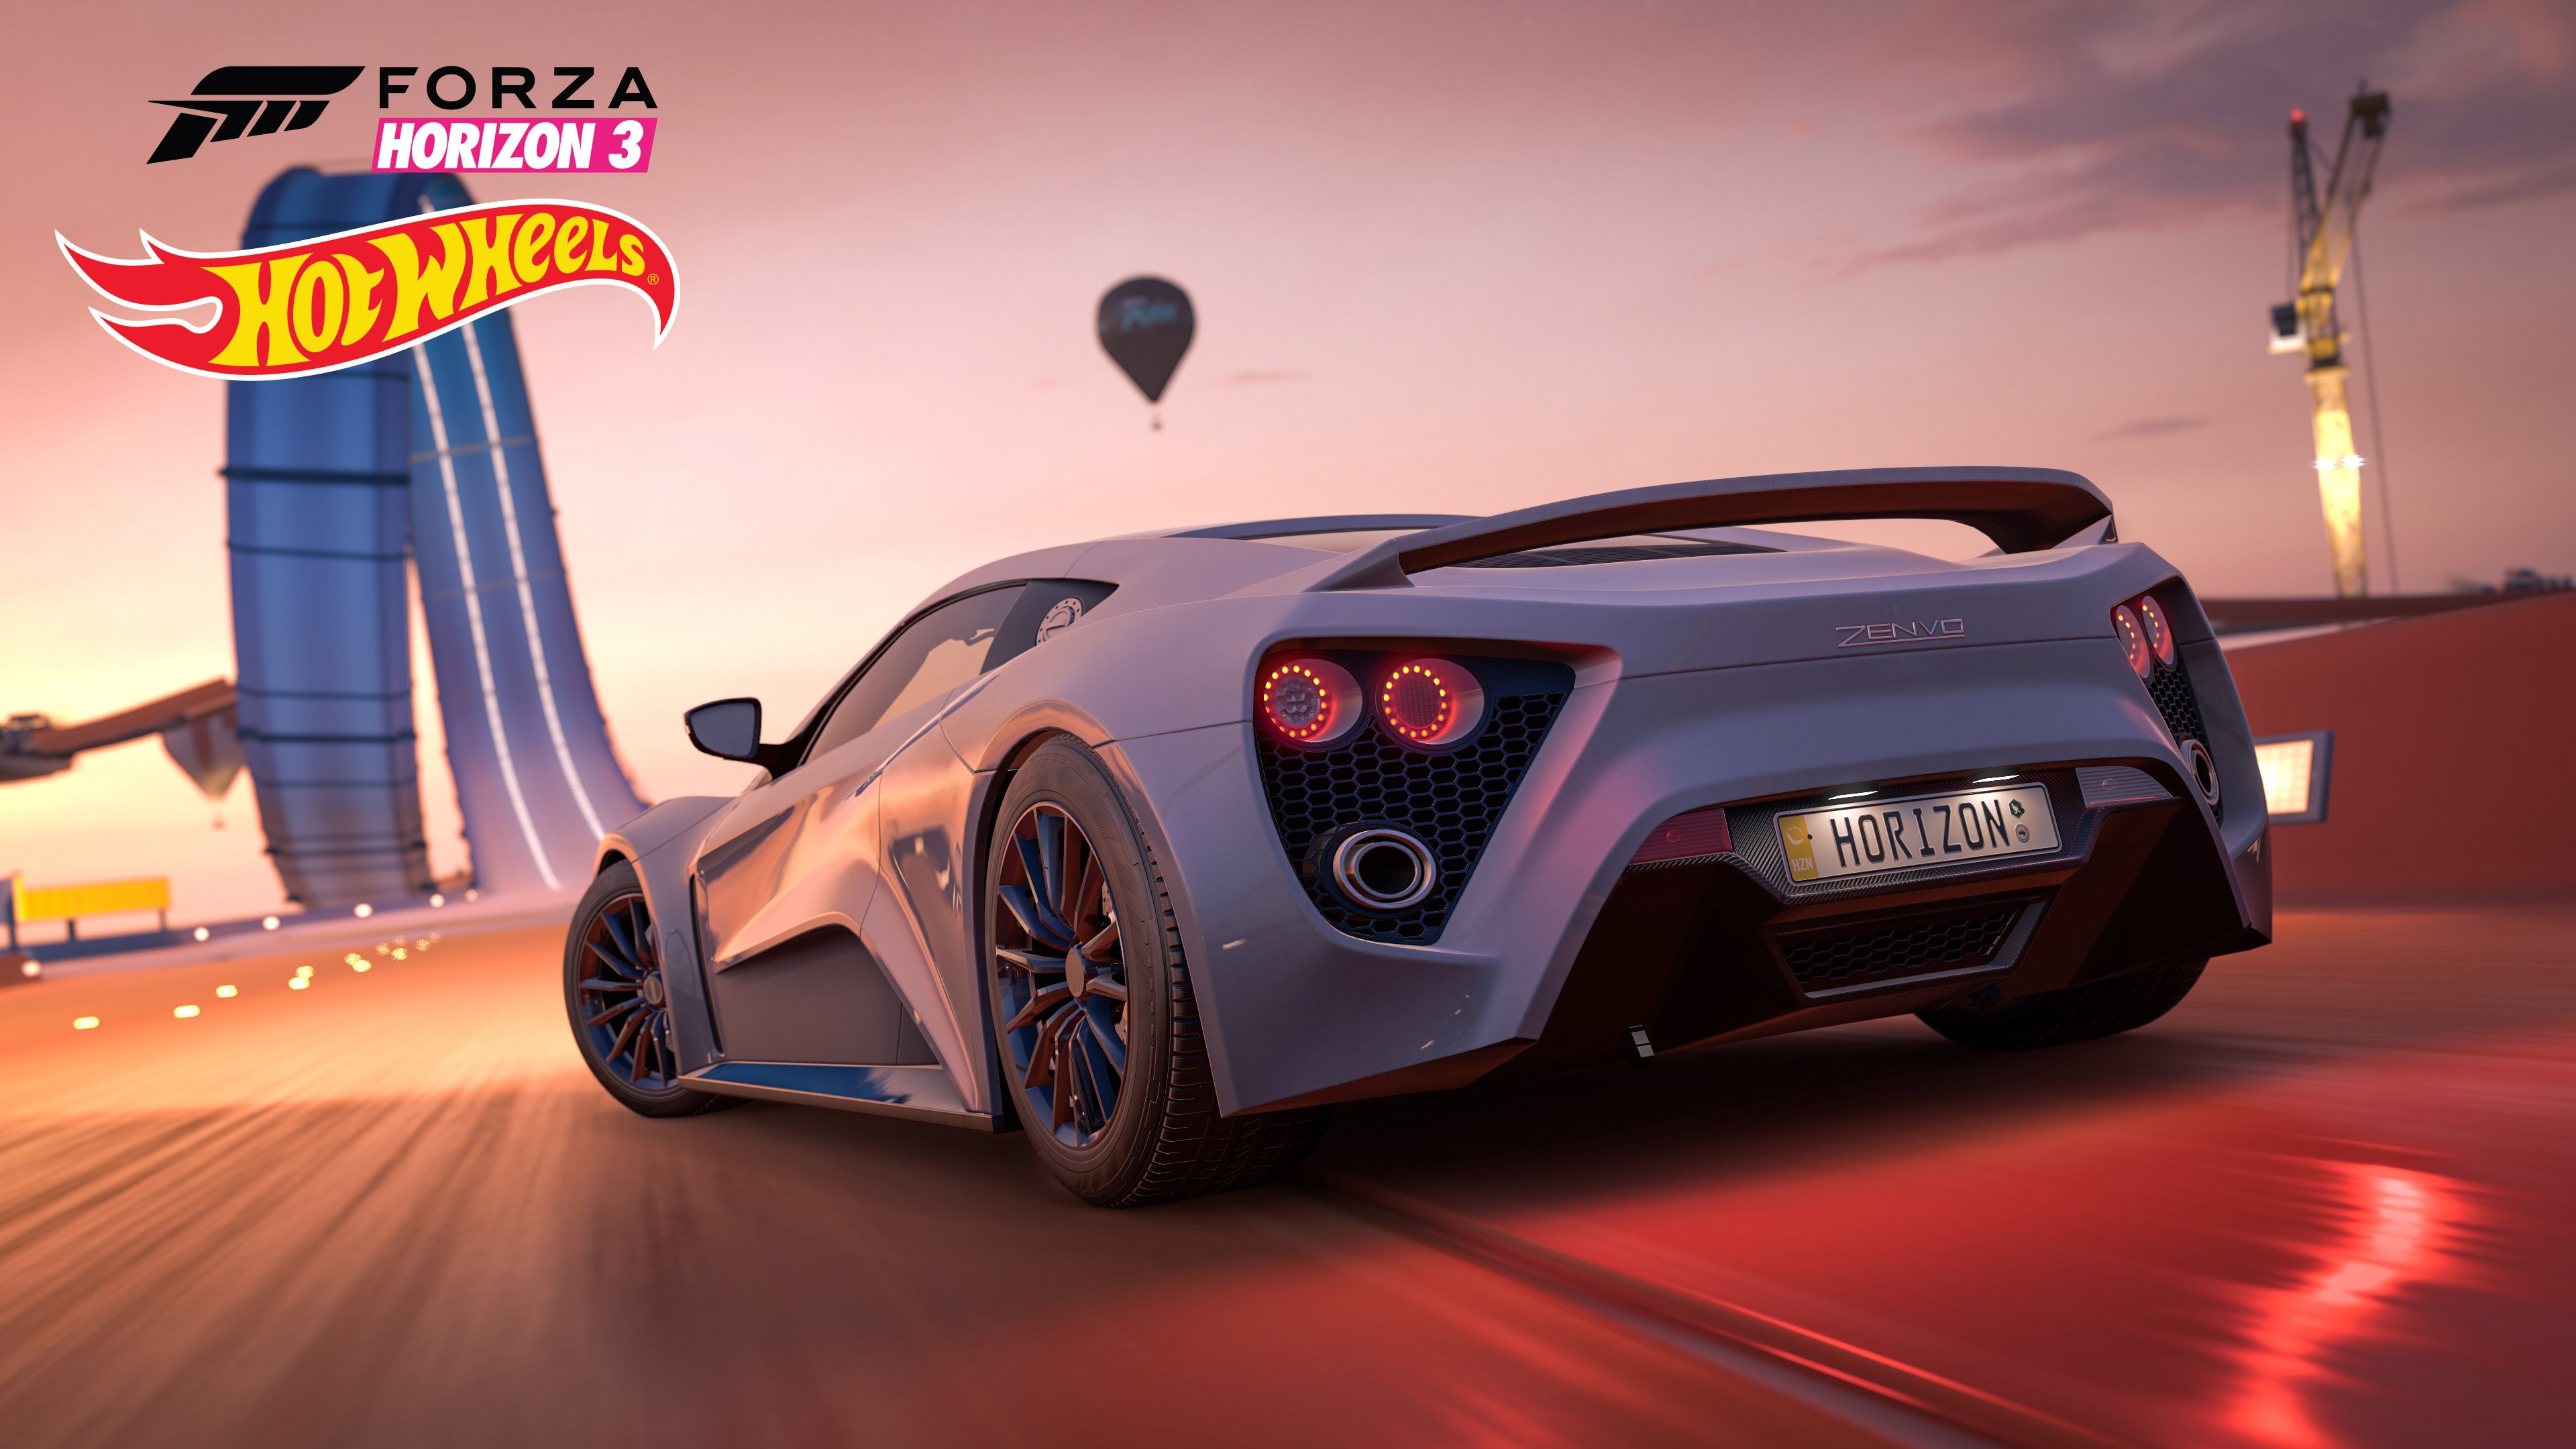 Forza Horizon 3 + Hot Wheels Xbox One 3